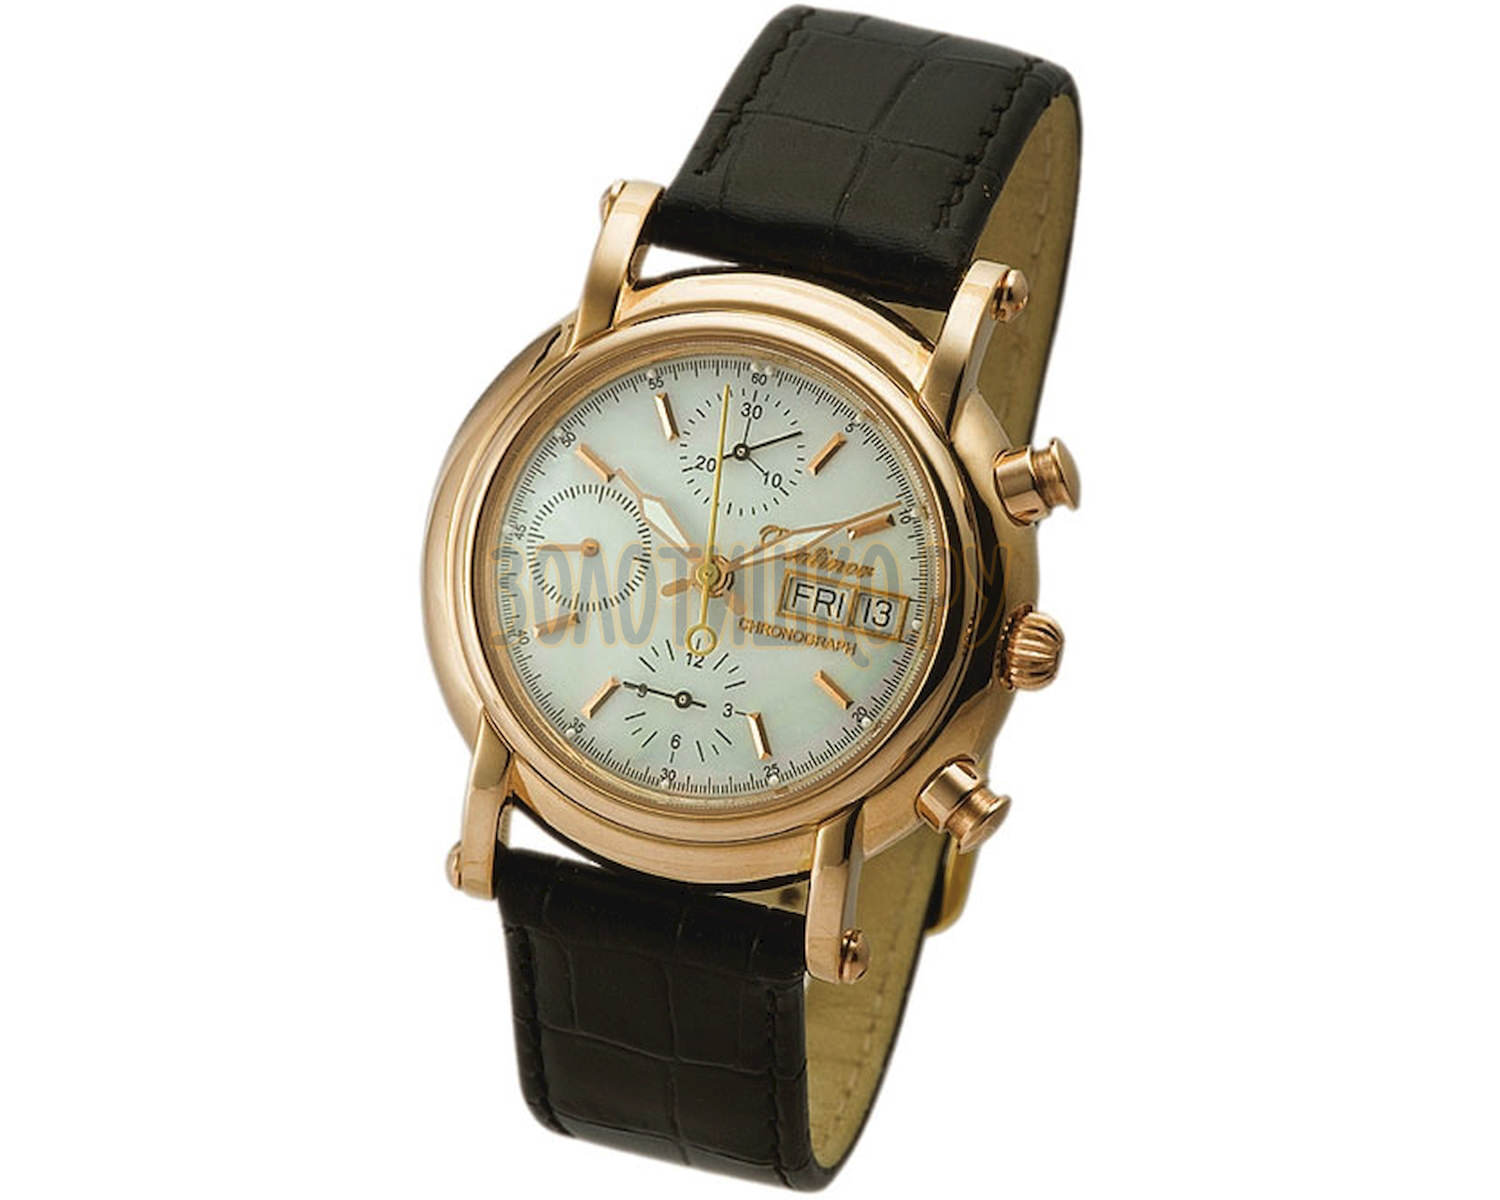 Купить часы на авито в спб. Мужские золотые часы Адмирал-2 Платинор. Часы Адмирал Платинор. Часы Платинор Адмирал 2. Платинор хронограф часы.